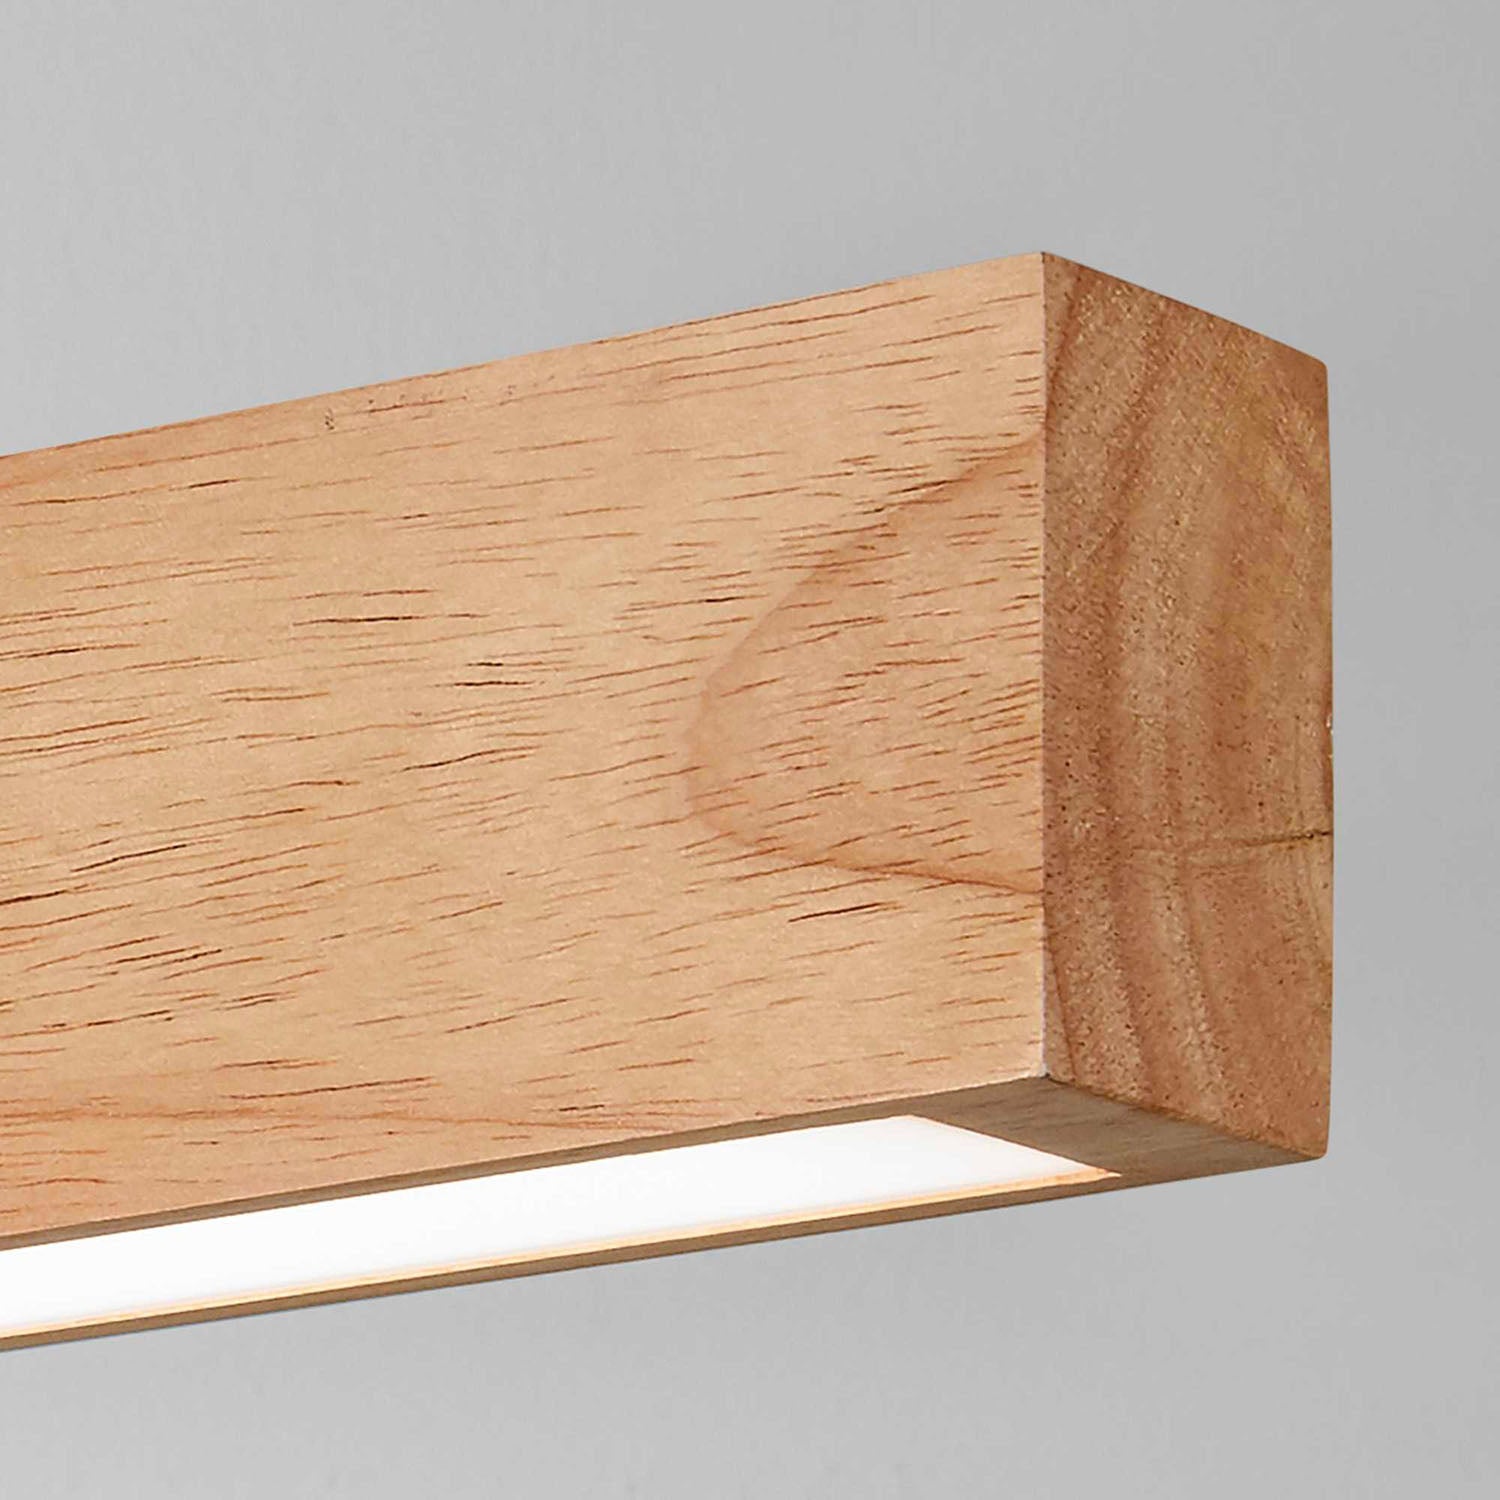 CRAFT – Integrierte lineare LED-Pendelleuchte aus Holz